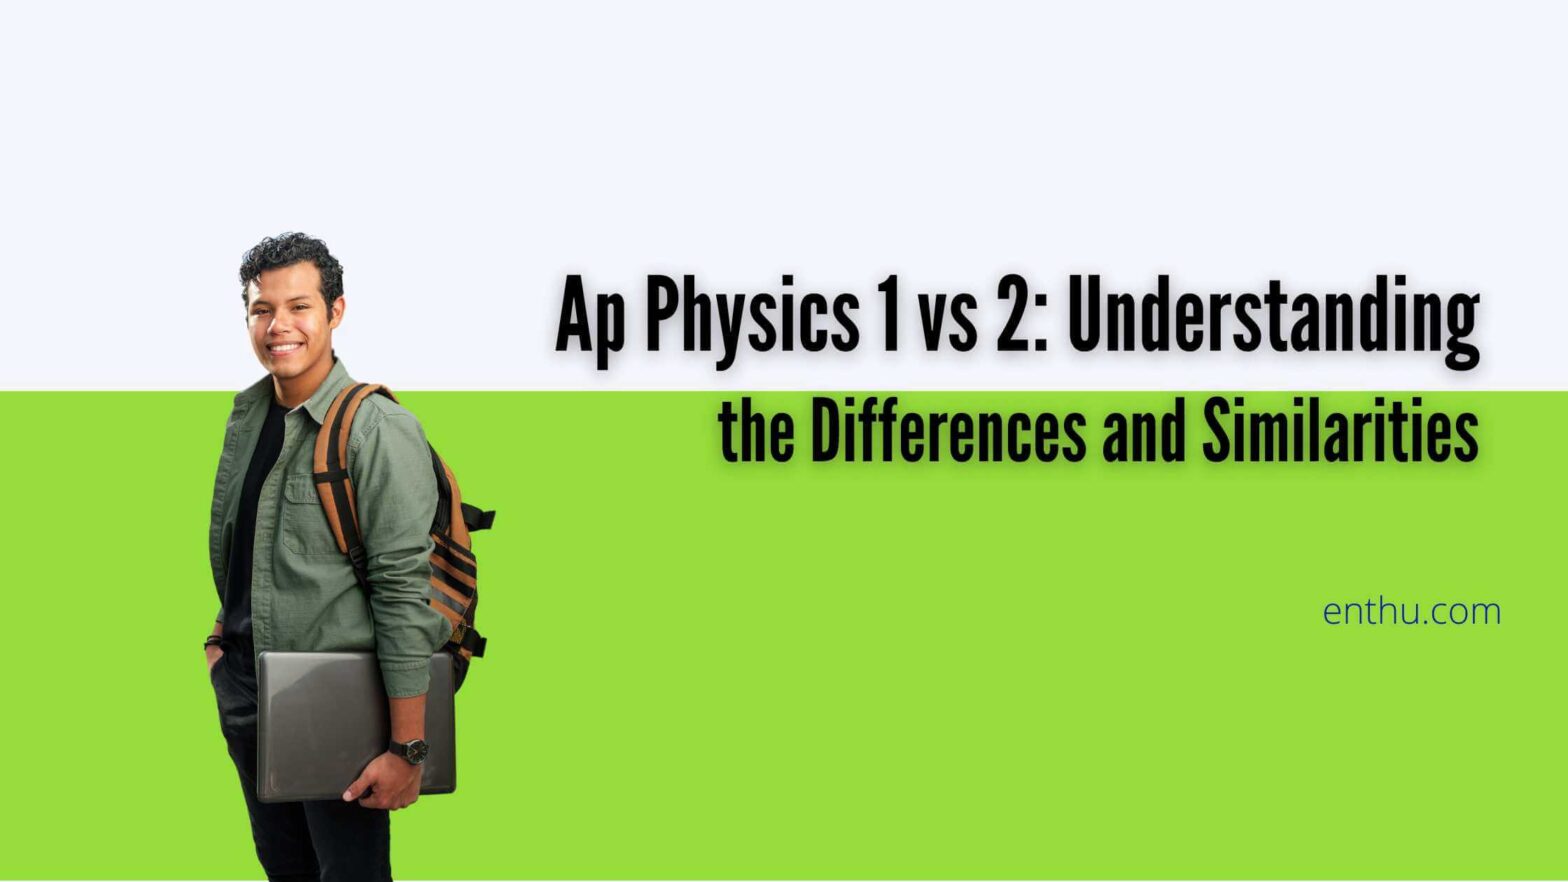 ap physics 1 vs 2